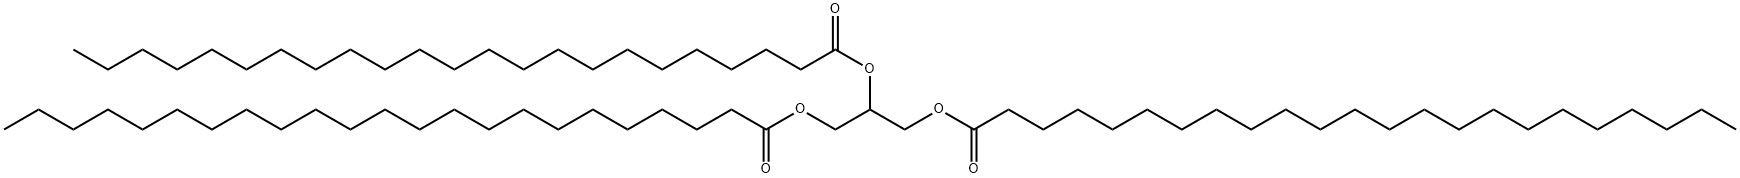 トリトリコサノイン標準品 化学構造式